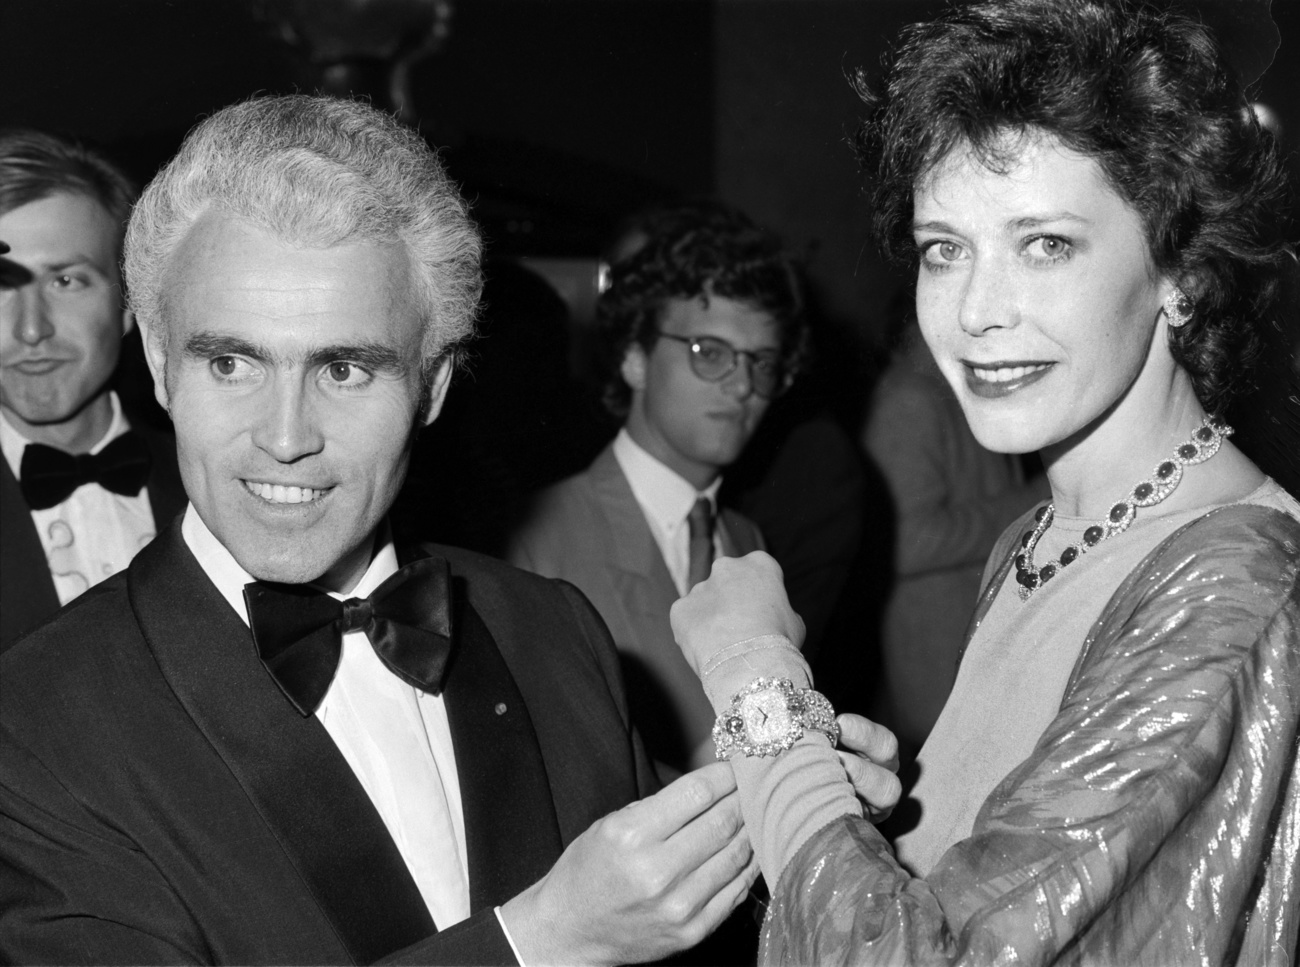 Schauspielerin Sylvia Kristel, rechts, und der Schweizer Uhrmacher Yves G. Piaget, links, präsentieren die teuerste Armbanduhr der Marke. Das Foto wurde am 20. Februar 1982 in St. Moritz aufgenommen.